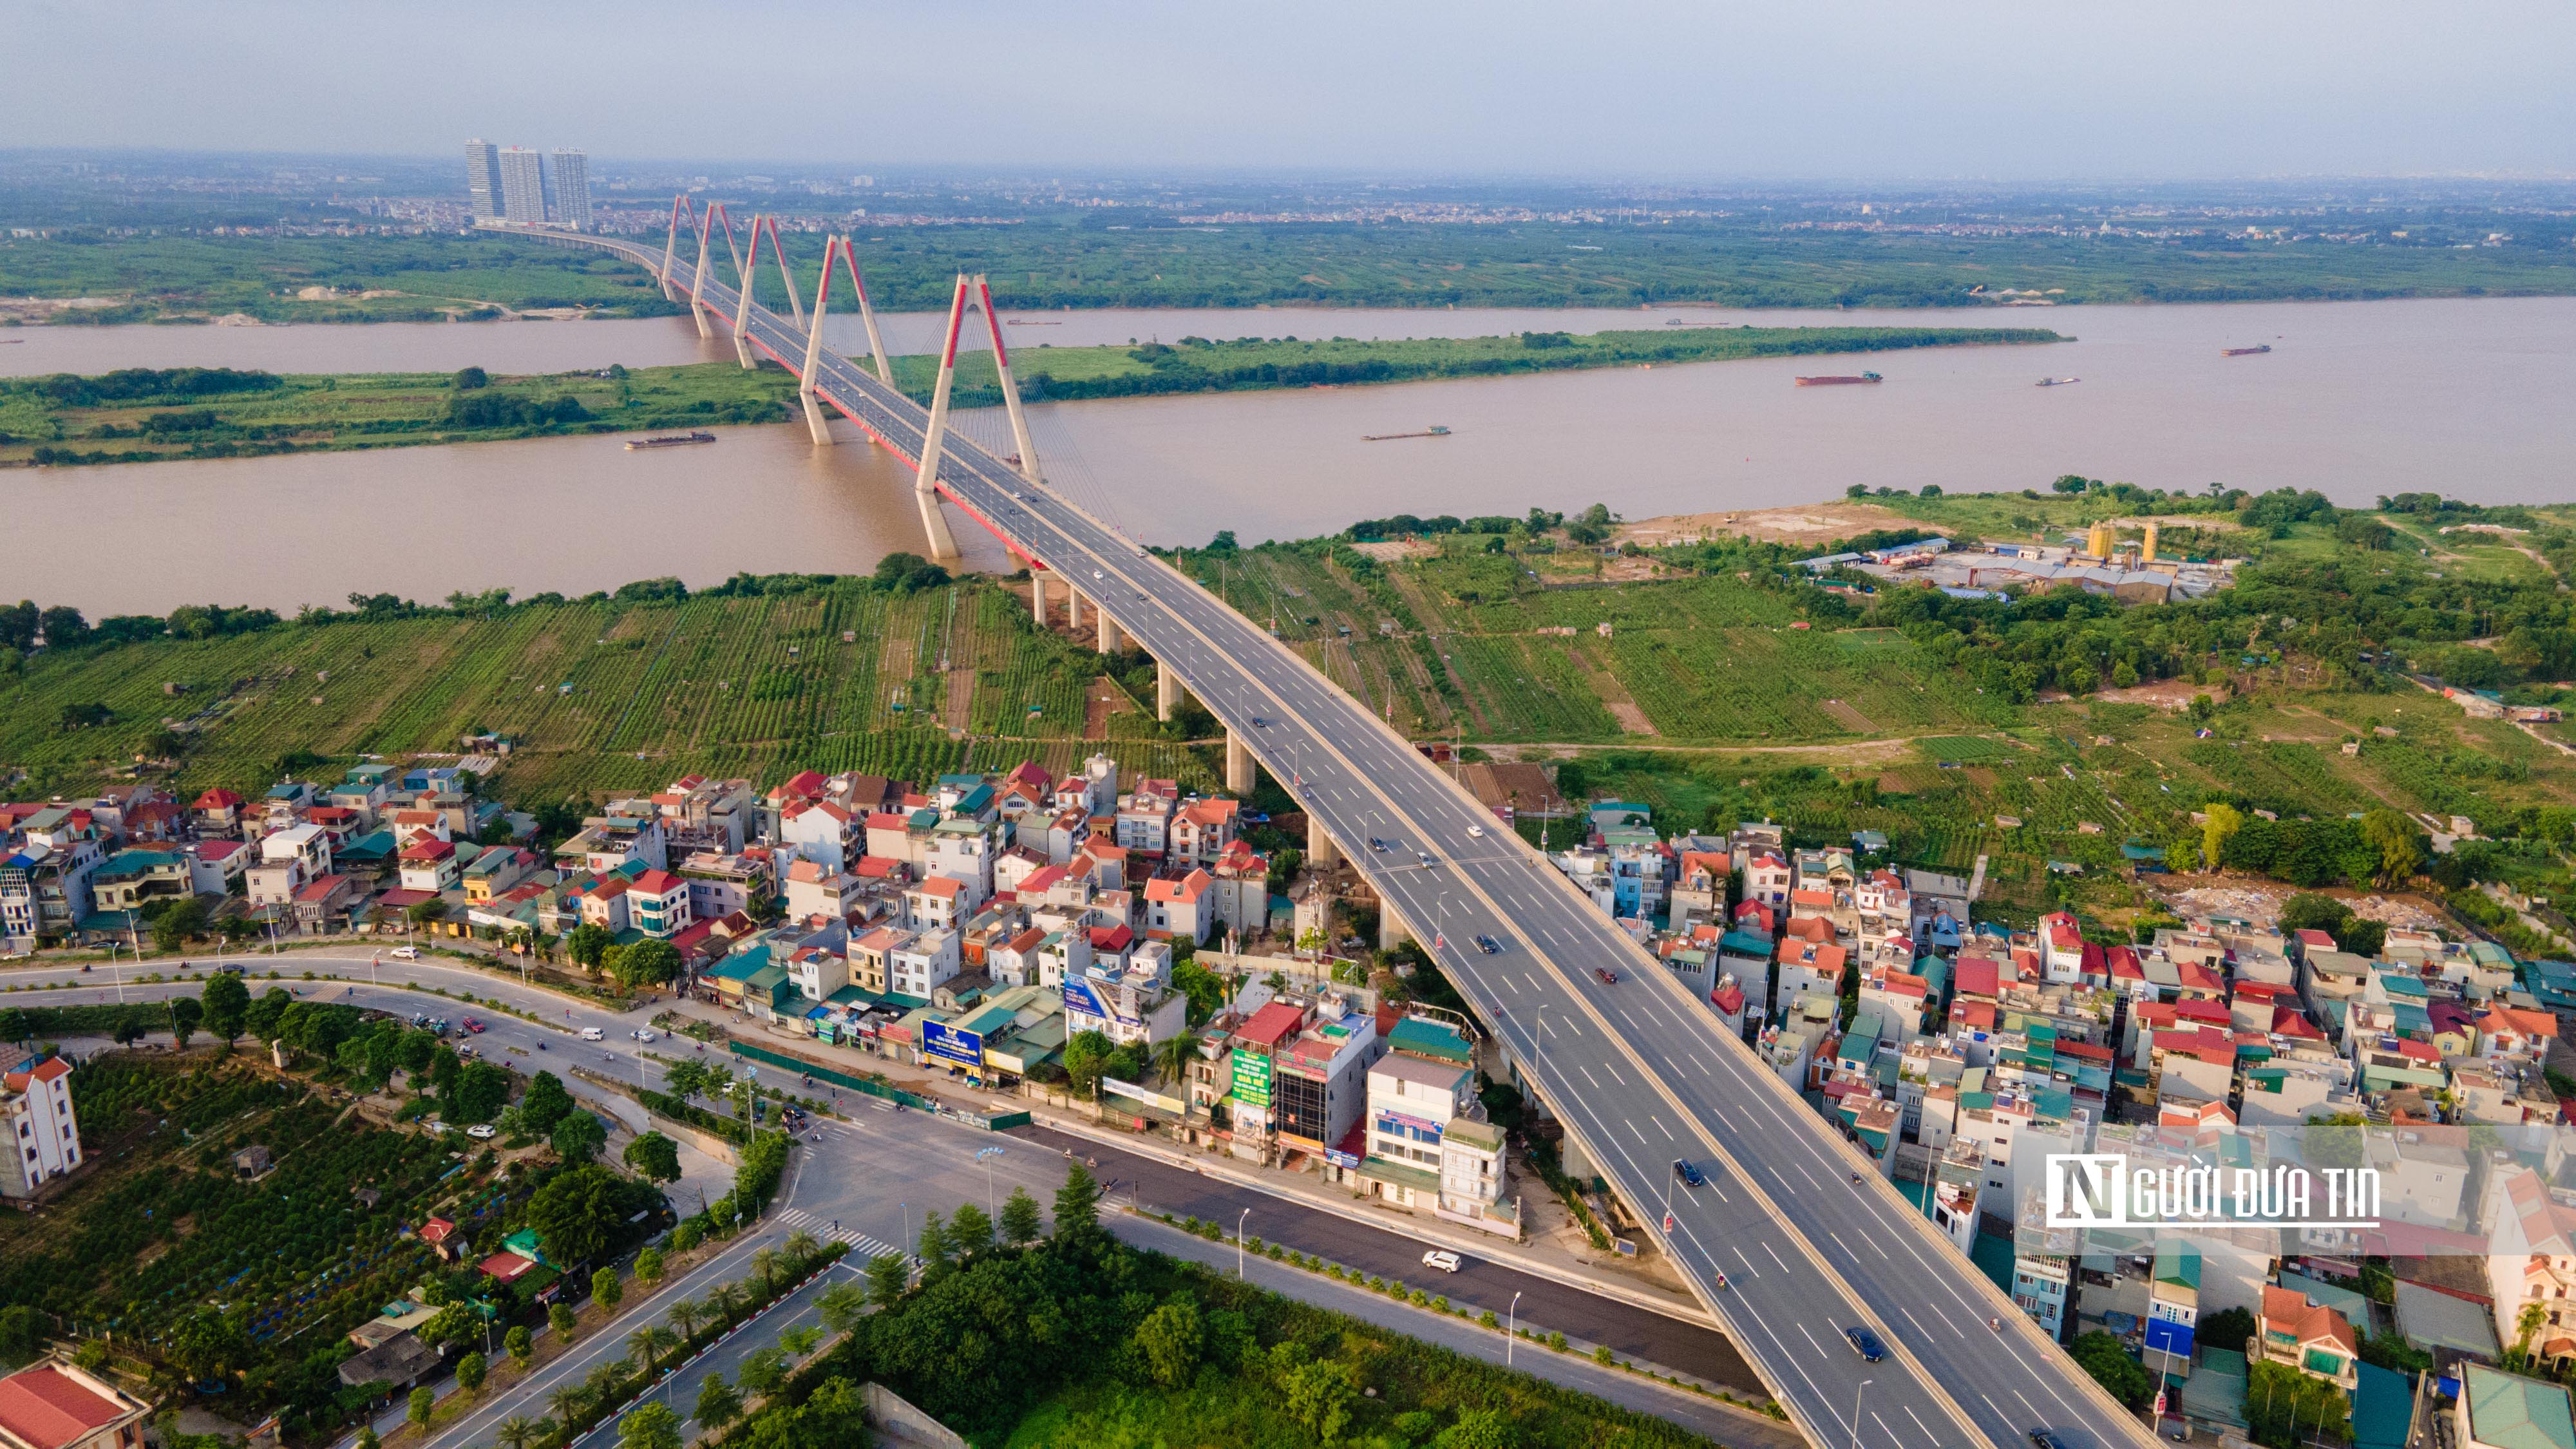 Đối thoại - Sửa Luật Thủ đô: Xóa sổ khu vực 'nhếch nhác' trong phát triển Hà Nội